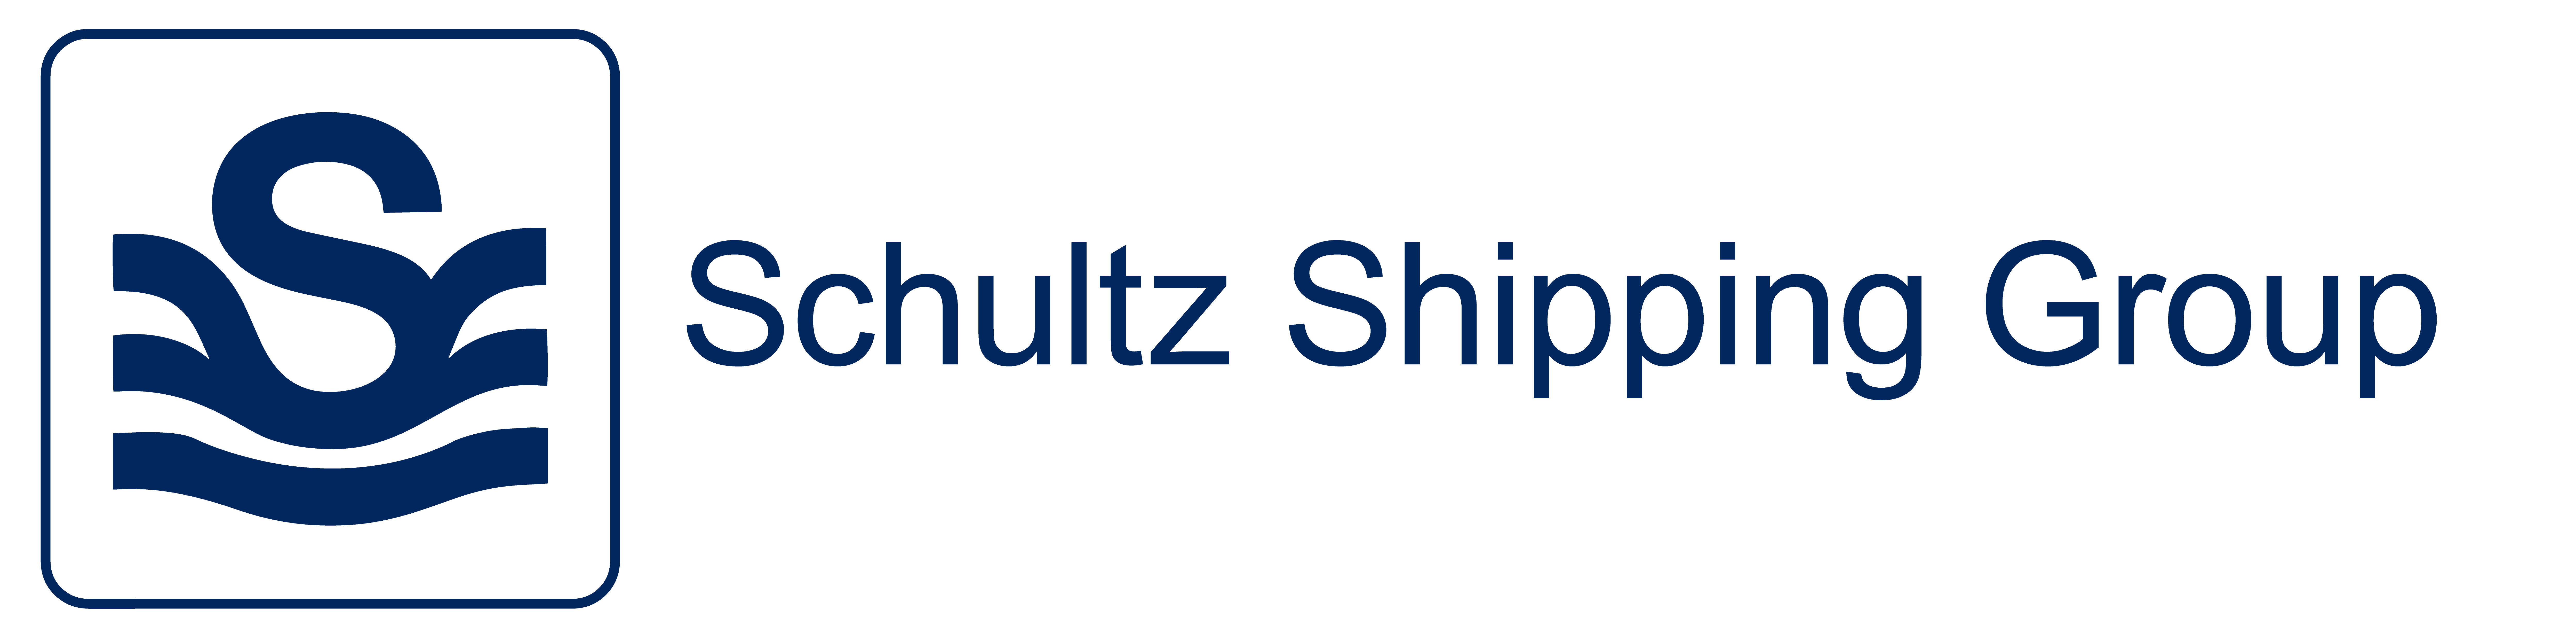 Schultz Shipping Group logo